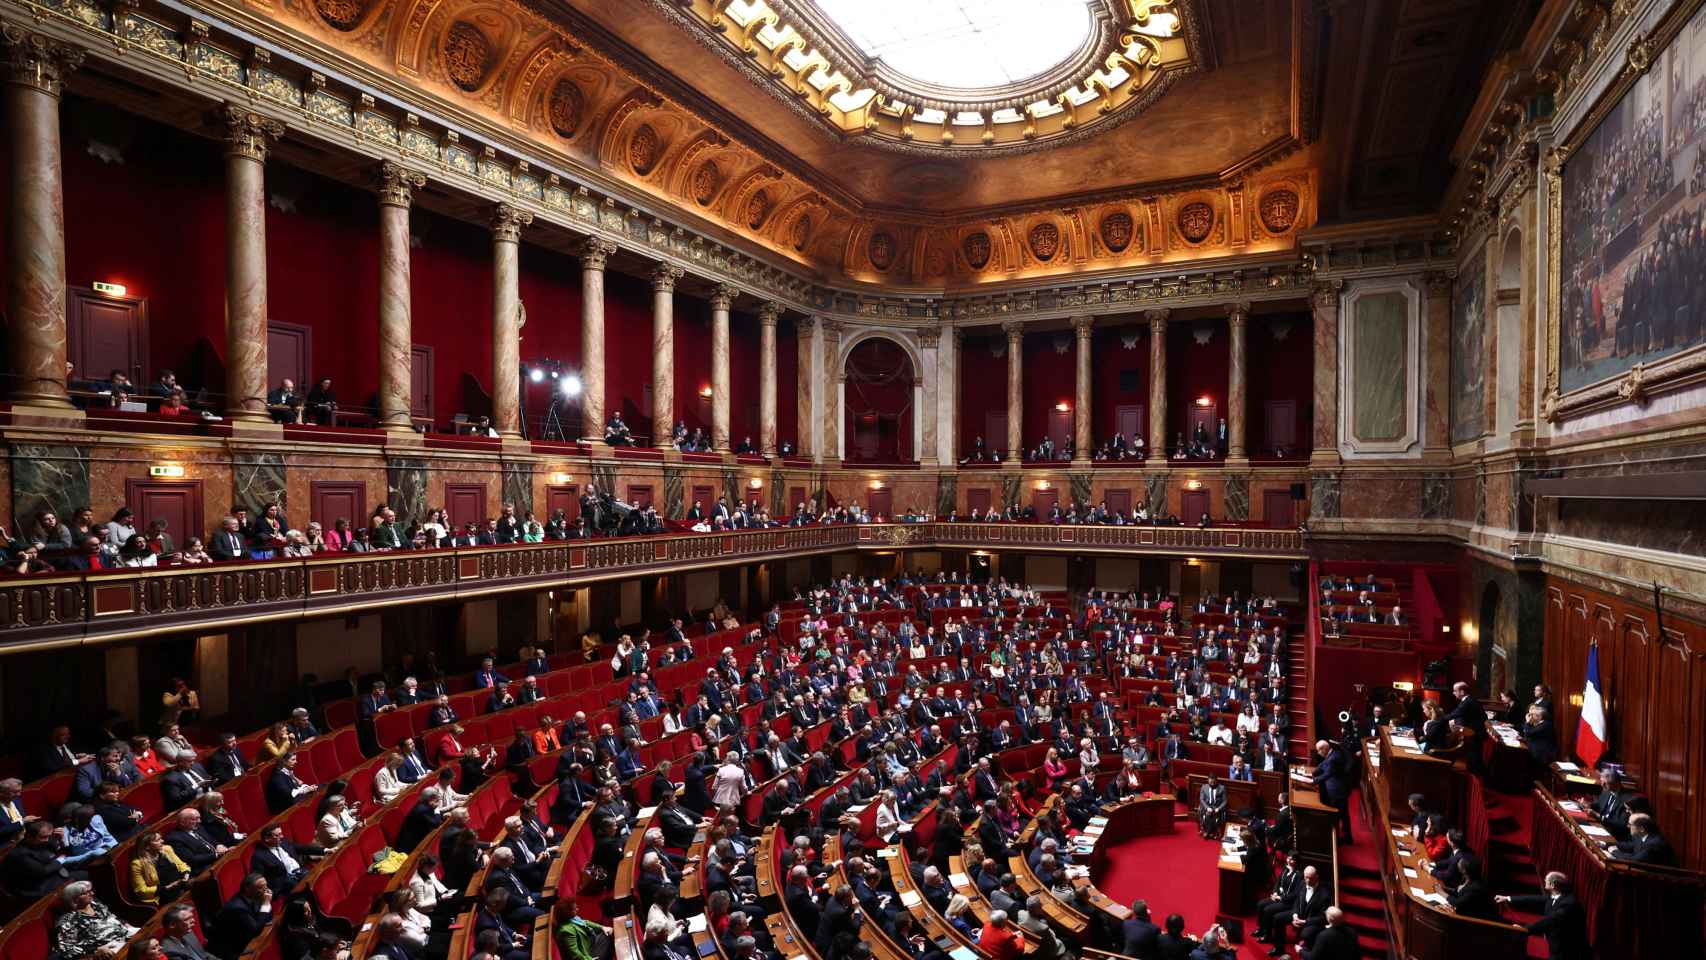 Vista general del congreso extraordinario en el Palacio de Versalles.